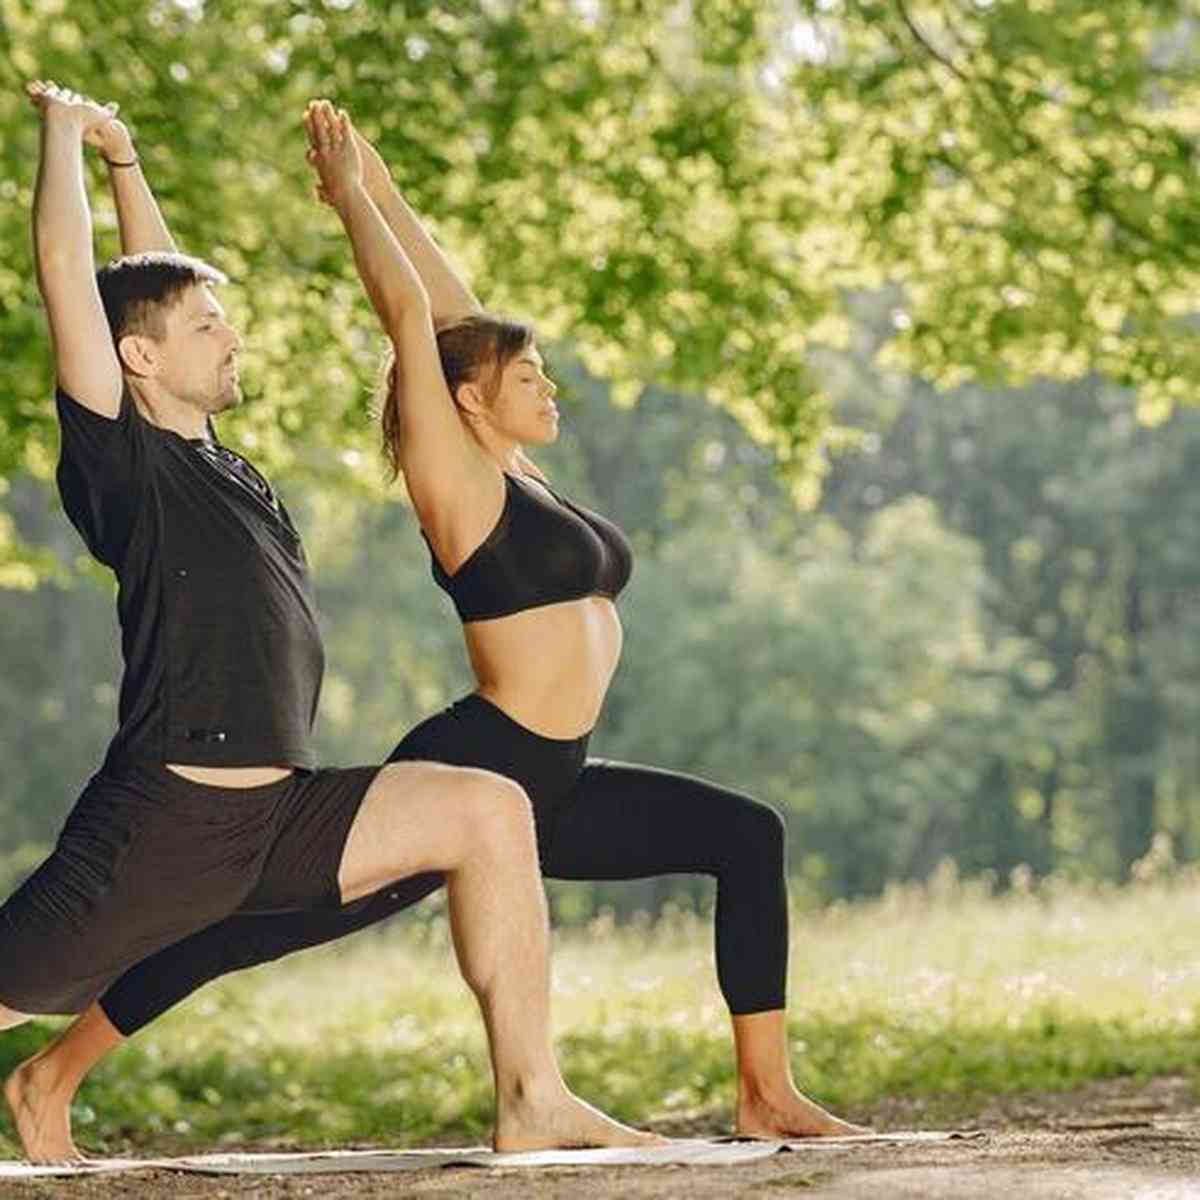 Yoga de duas pessoas: conheça a prática e aproveite os benefícios